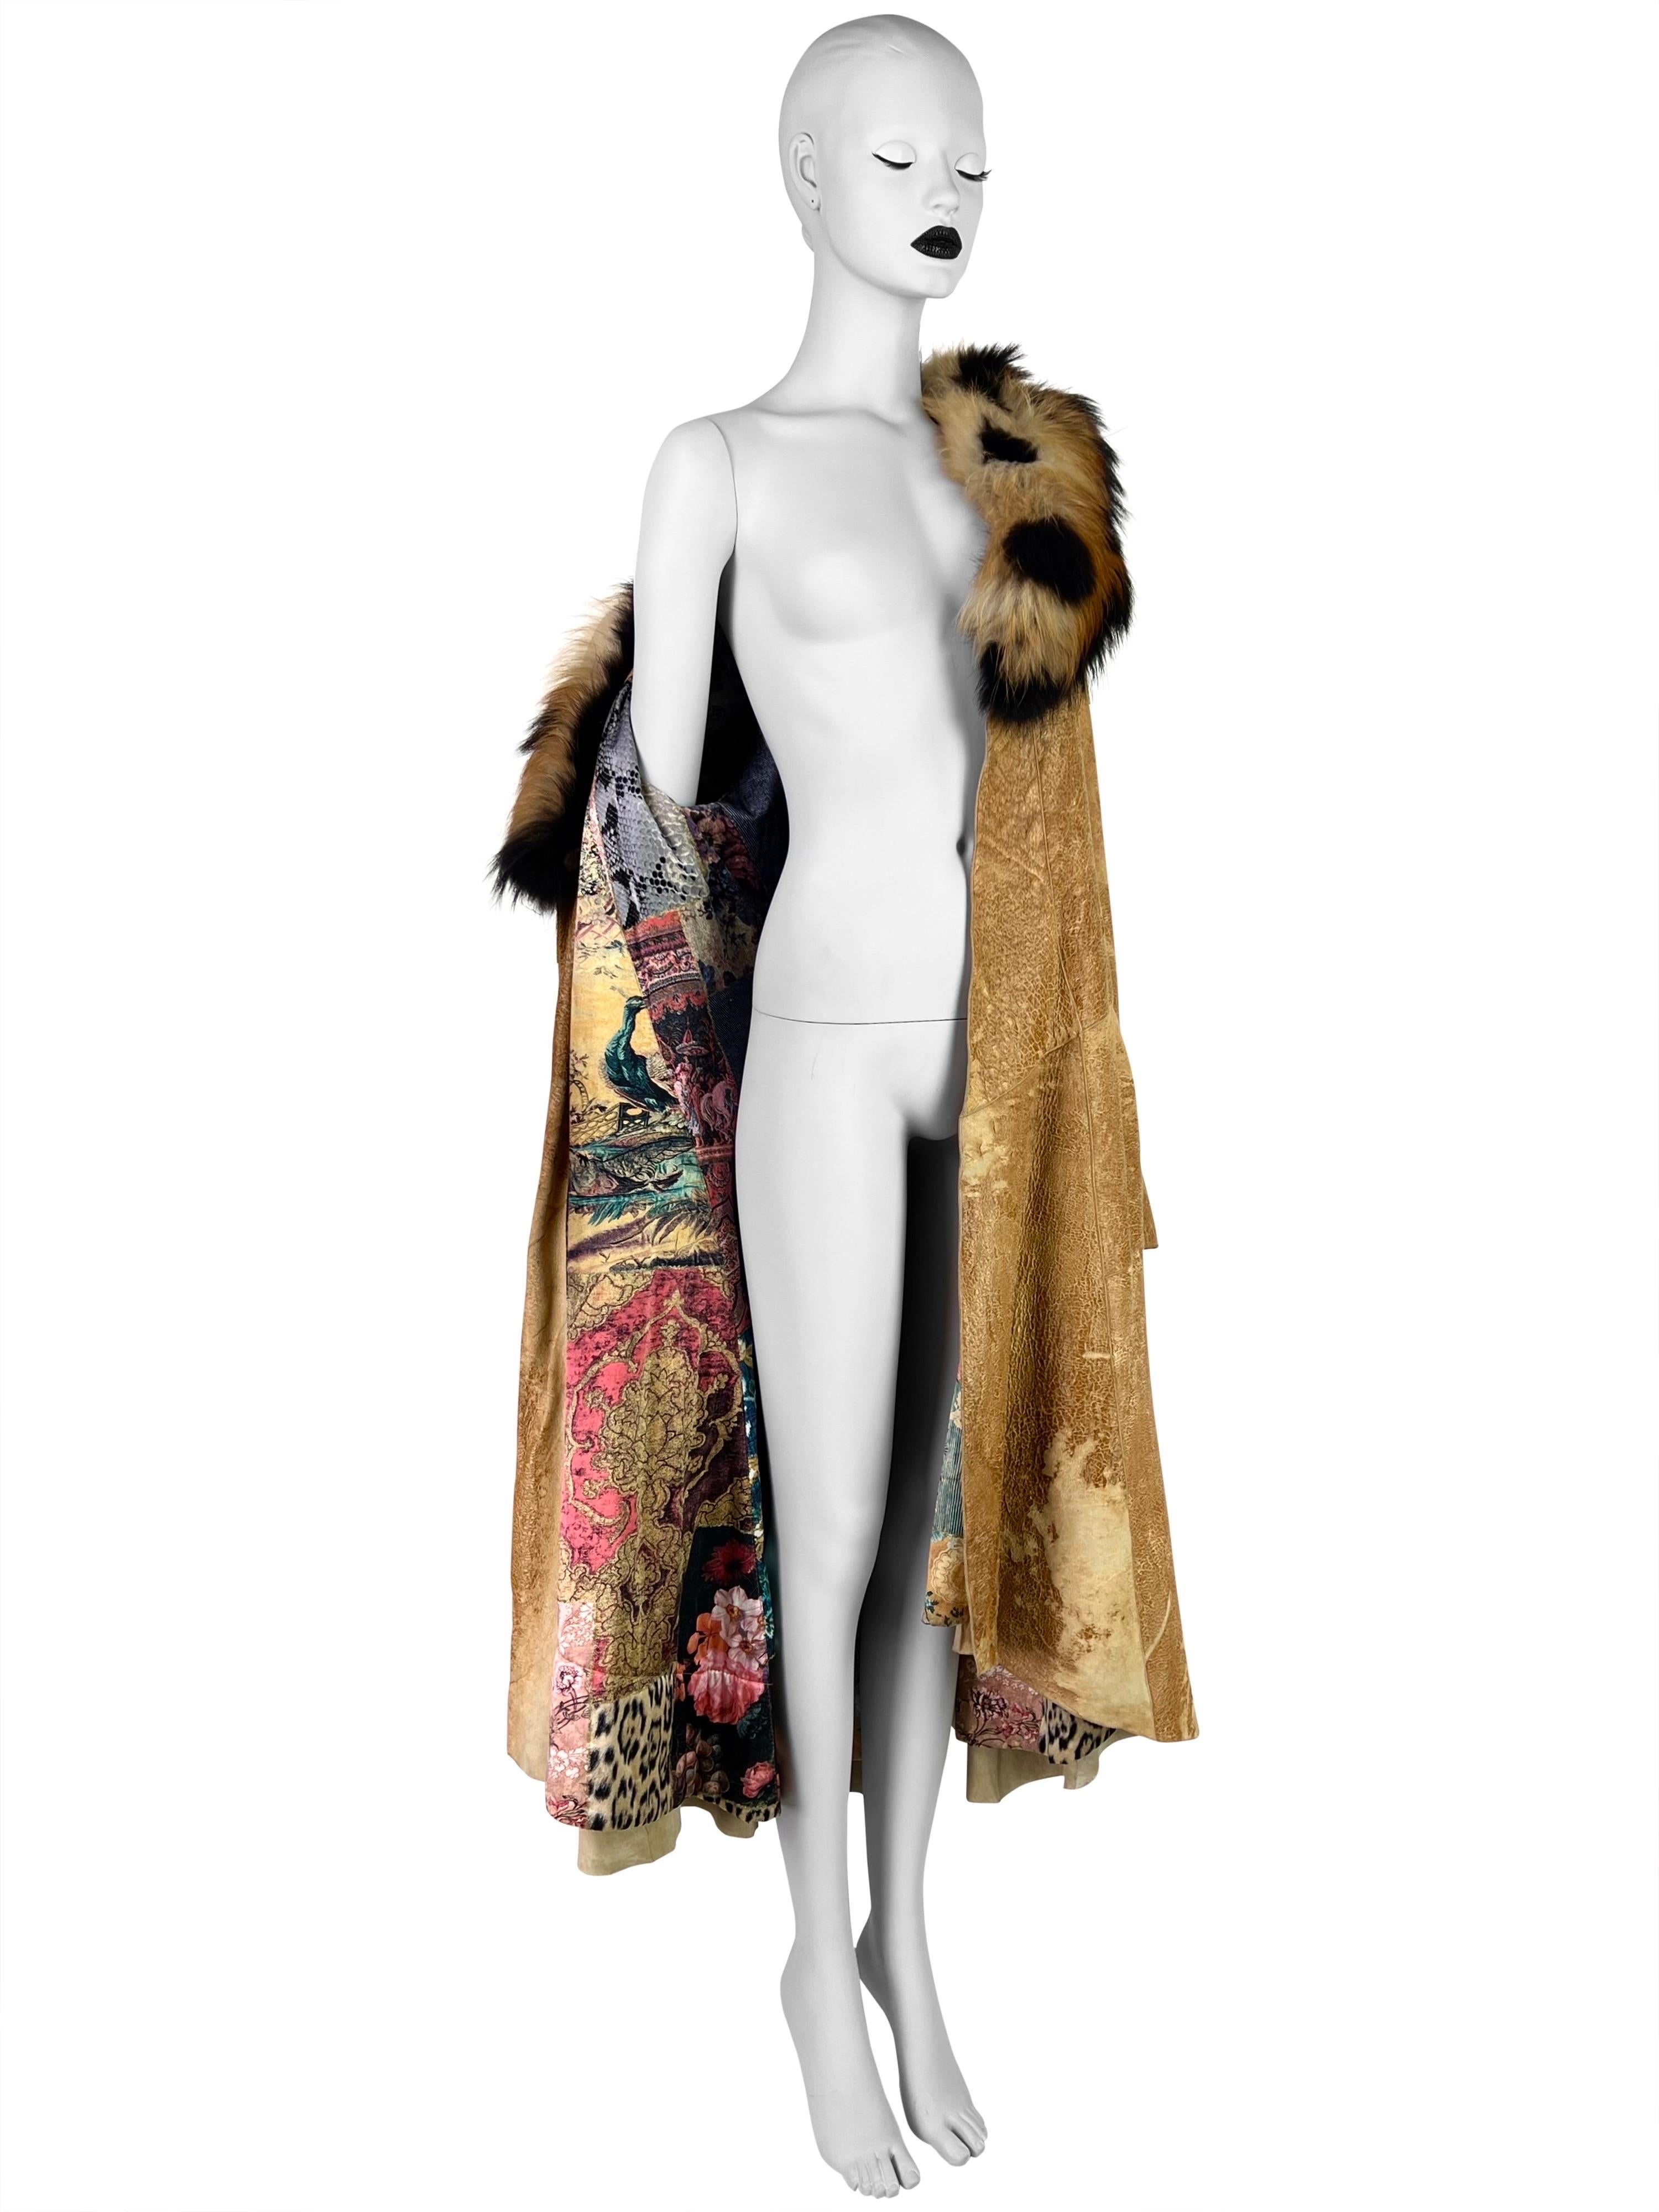 Le meilleur exemple de la signature de Roberto Cavalli, l'artisanat du cuir sous la forme de ce superbe manteau en cuir avec texture de cuir apparente et revêtement réfléchissant, rehaussé d'un riche col en fourrure de renard et d'une doublure en